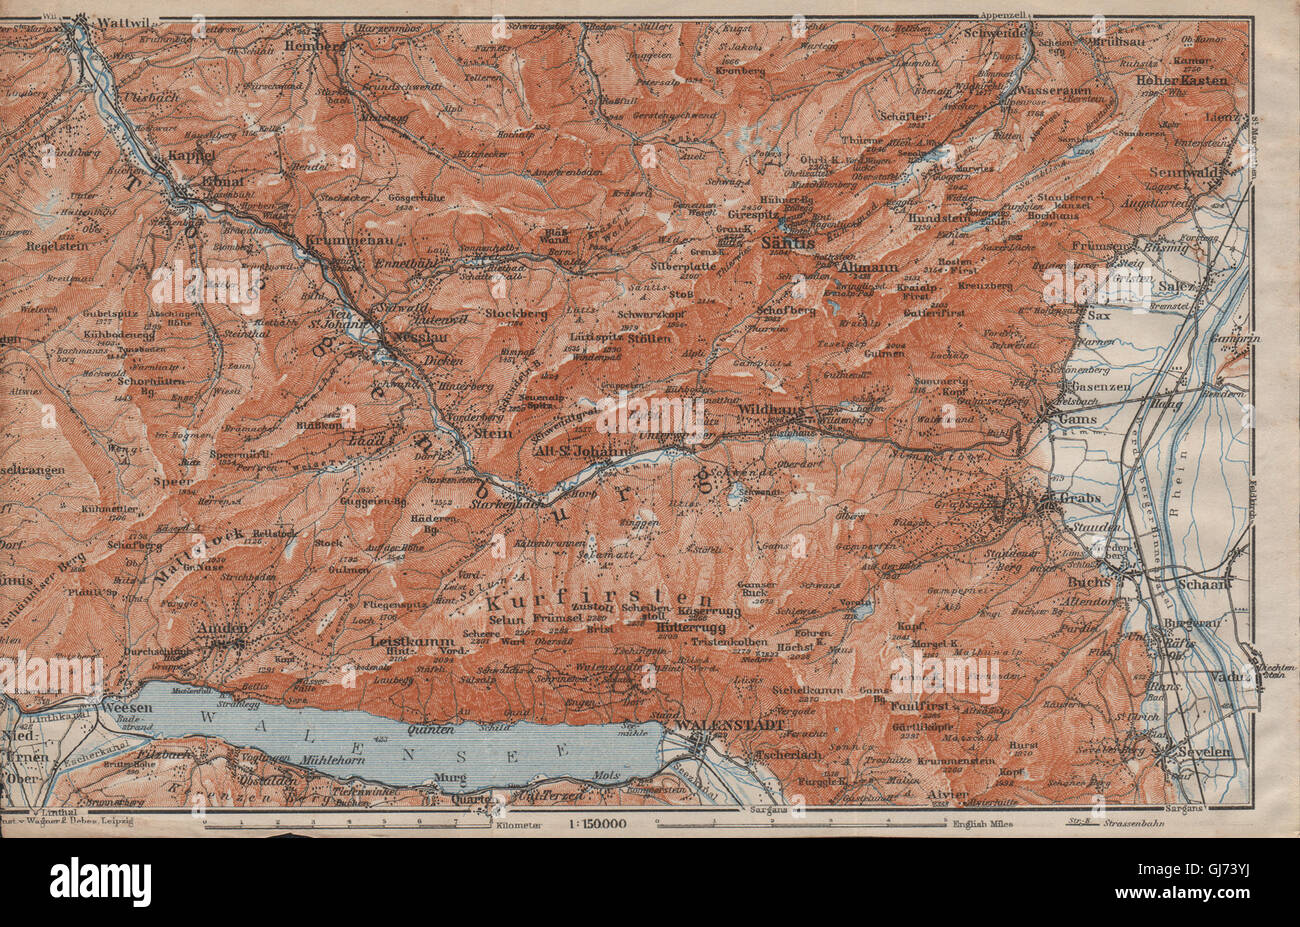 Gio VALLEY.Säntis Toggenburg Wildhaus Alt St Johann Unterwasser afferra, 1913 Mappa Foto Stock